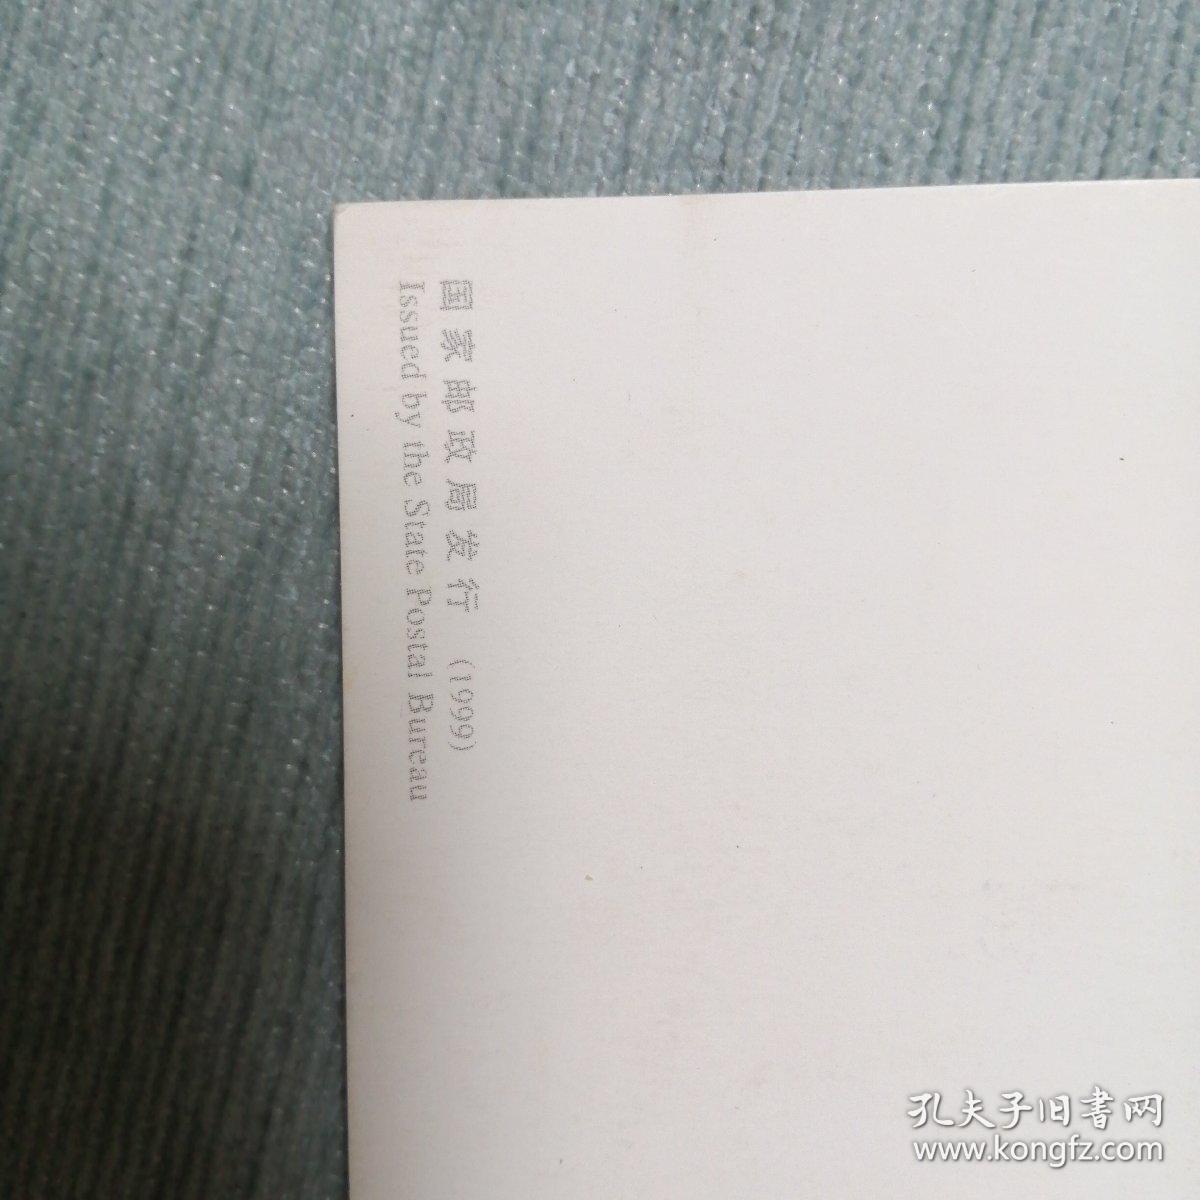 中国邮政明信片